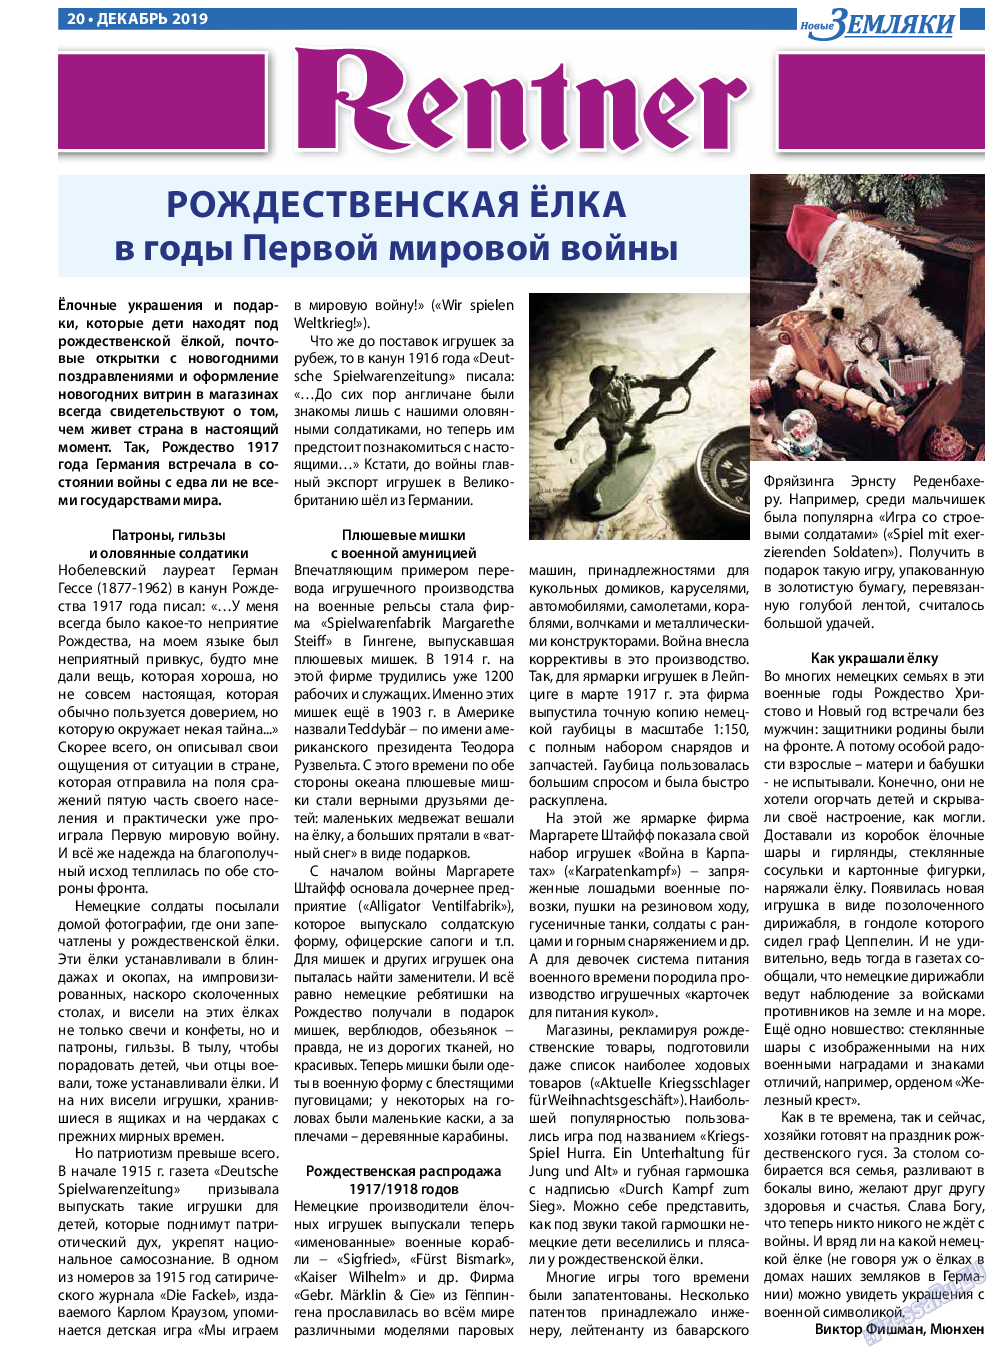 Новые Земляки, газета. 2019 №12 стр.20